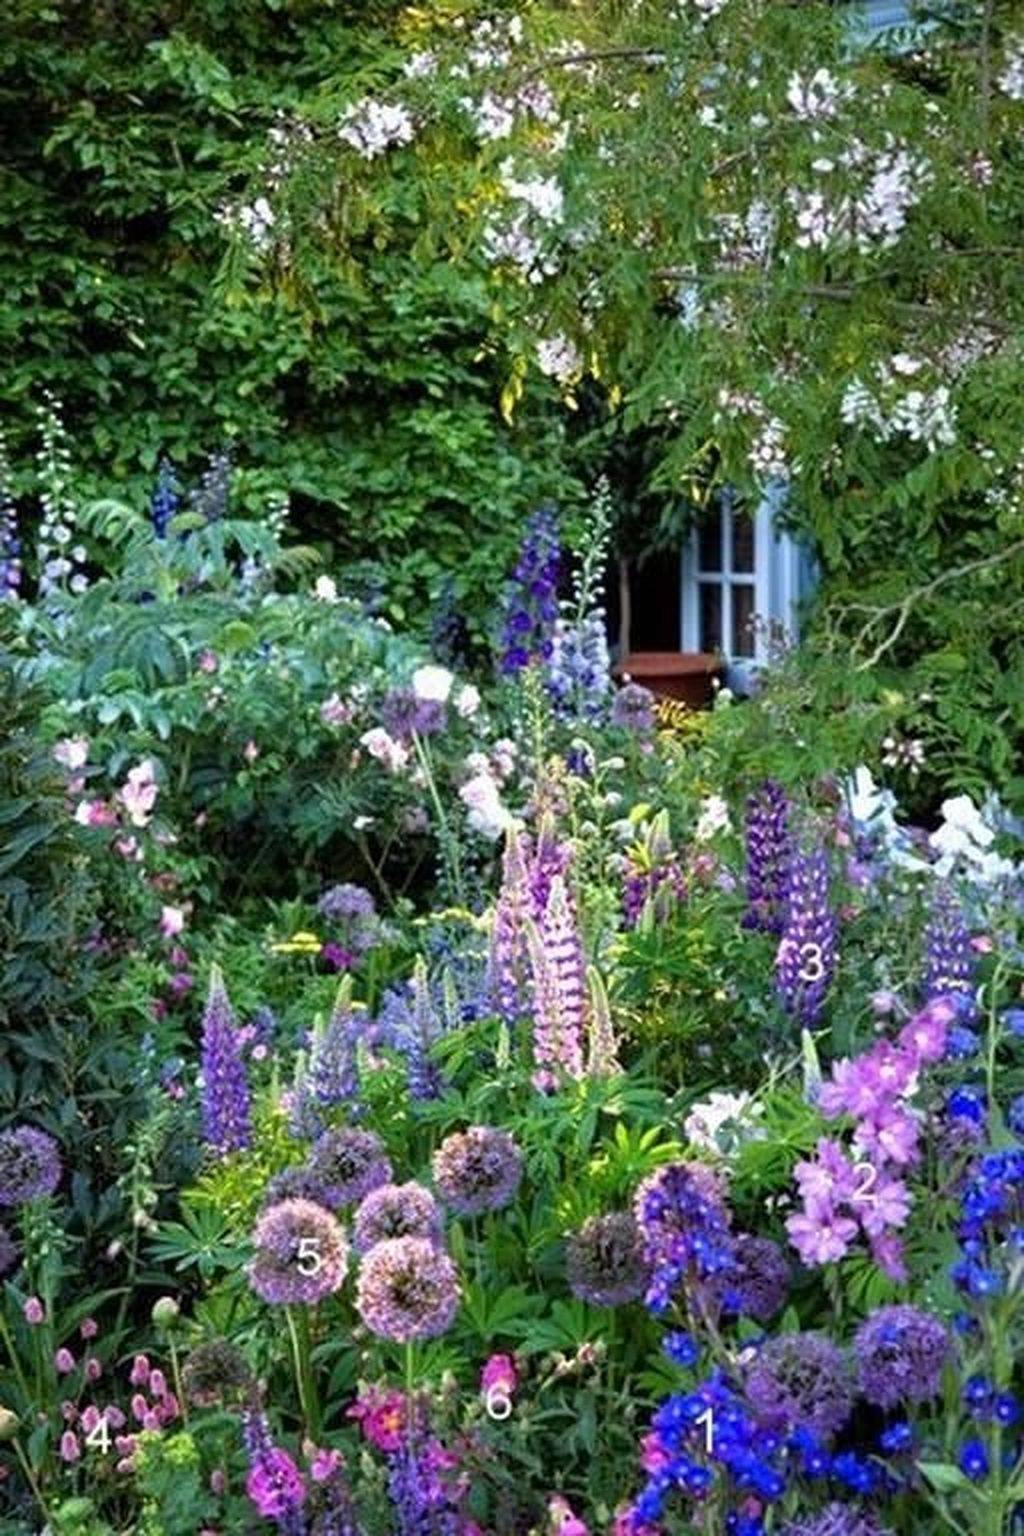 Cottage Garden Ideas